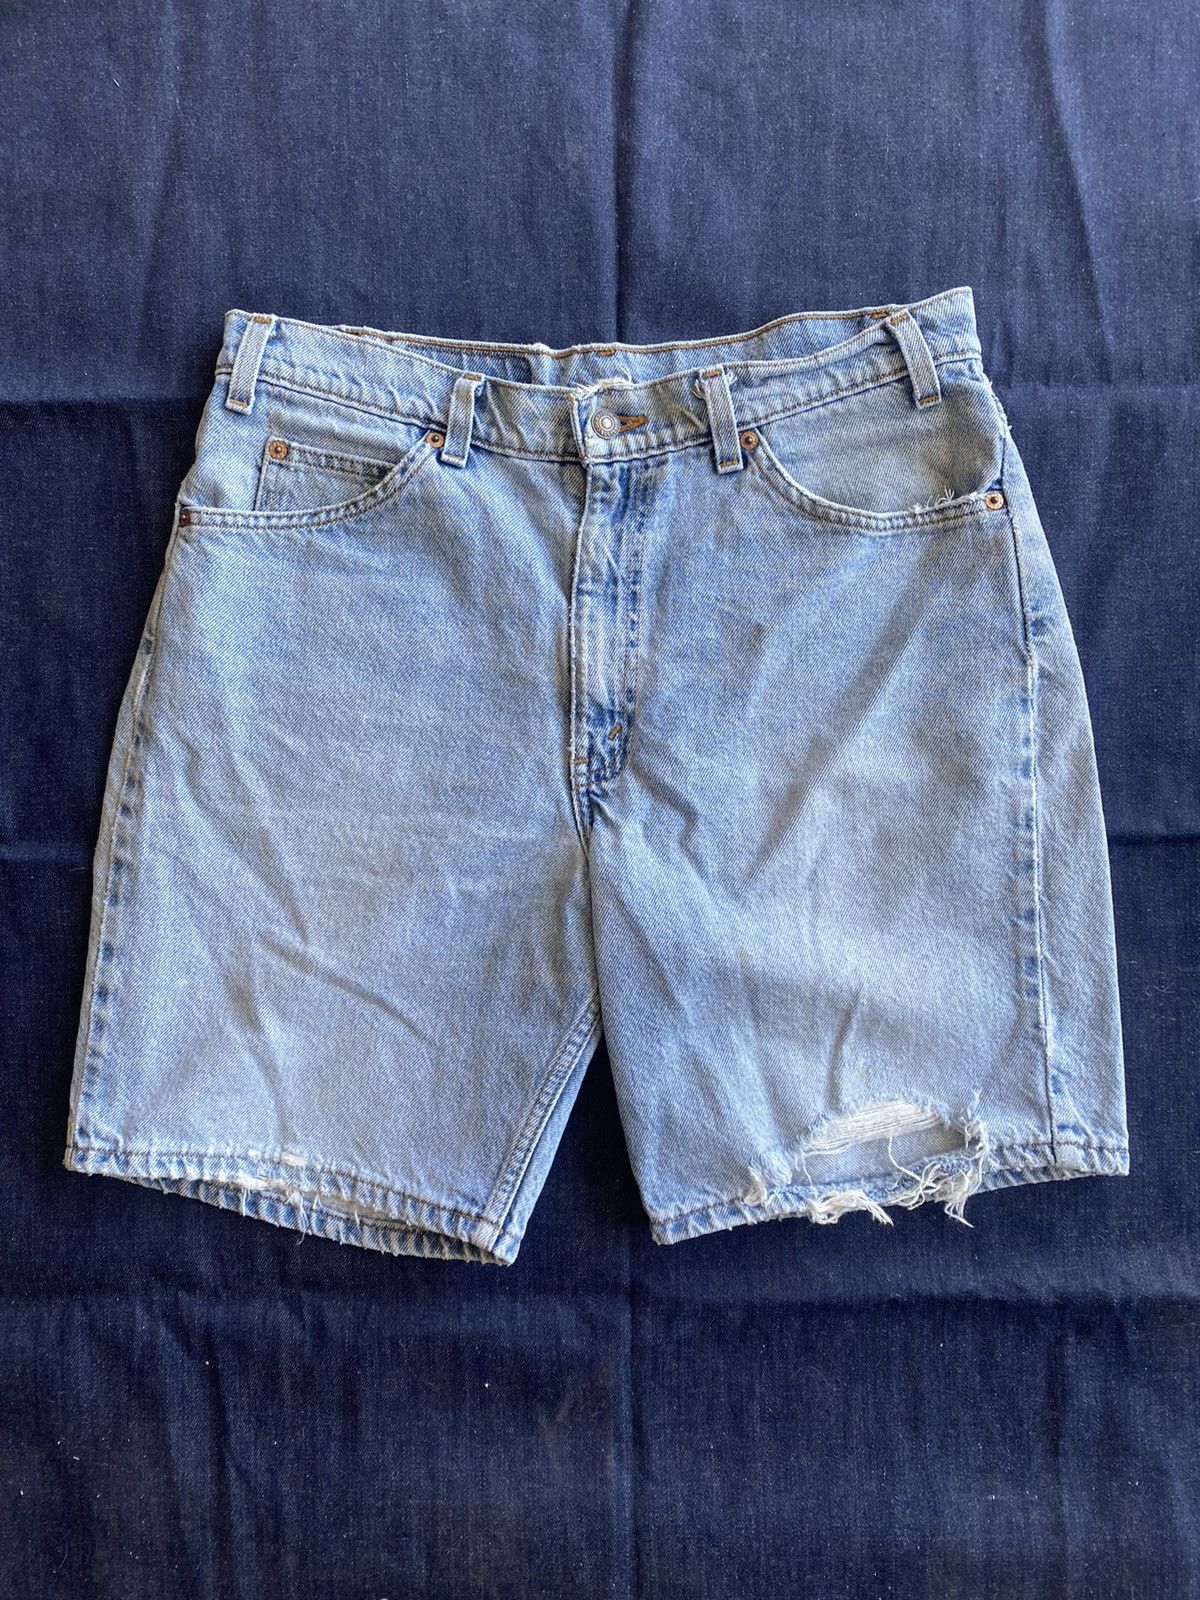 Vintage Vintage y2k Levi’s 550 orange tab jean shorts Levi’s jorts Size US 32 / EU 48 - 1 Preview